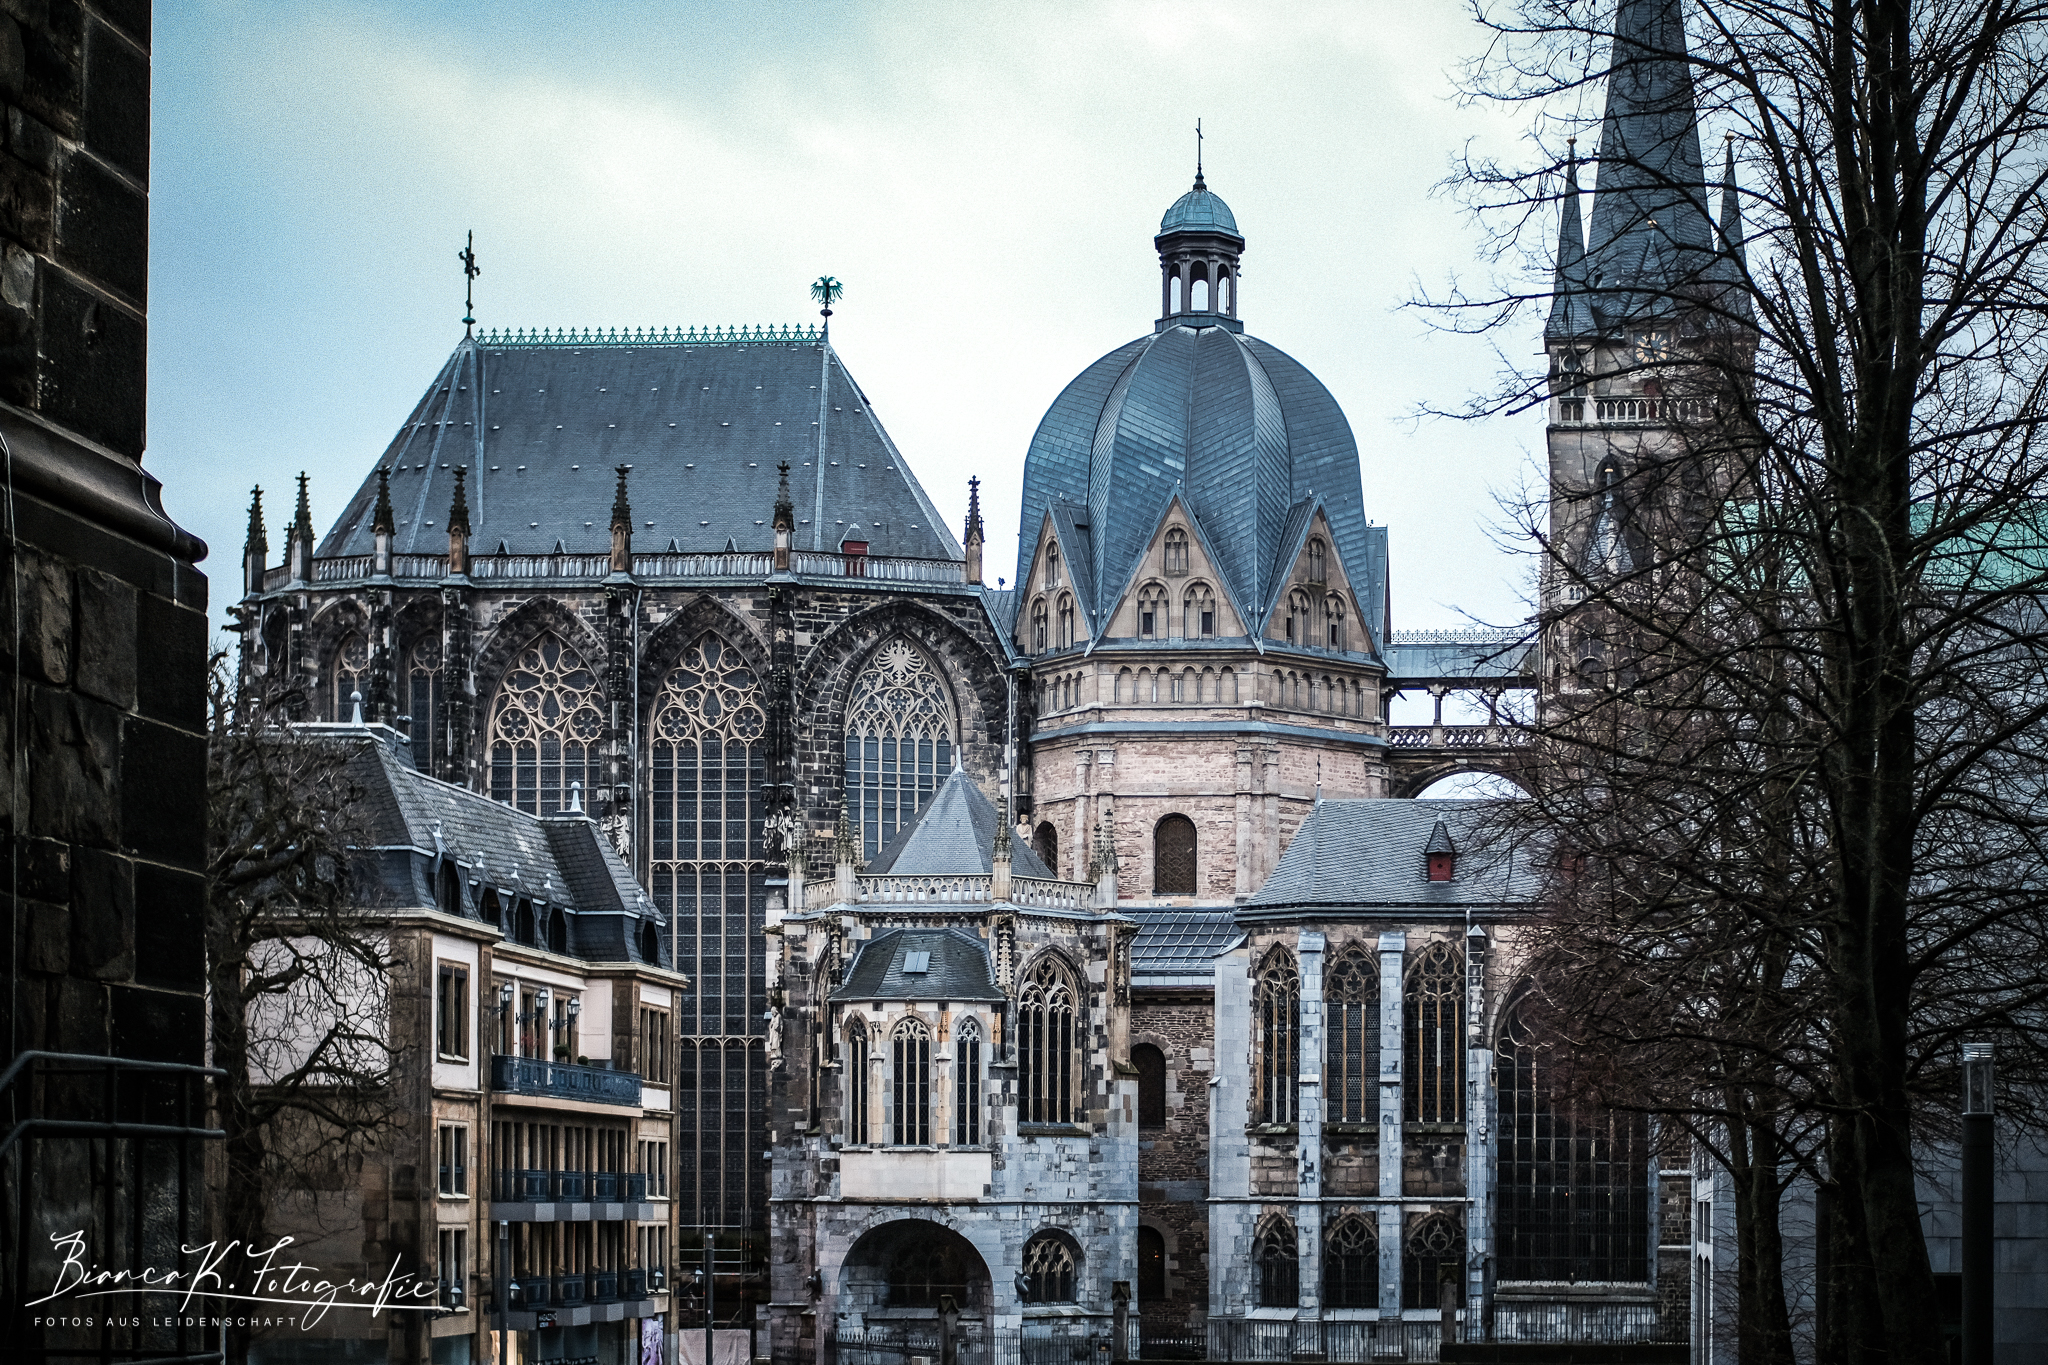 Aachener Dom vom Katschhof aus fotografiert